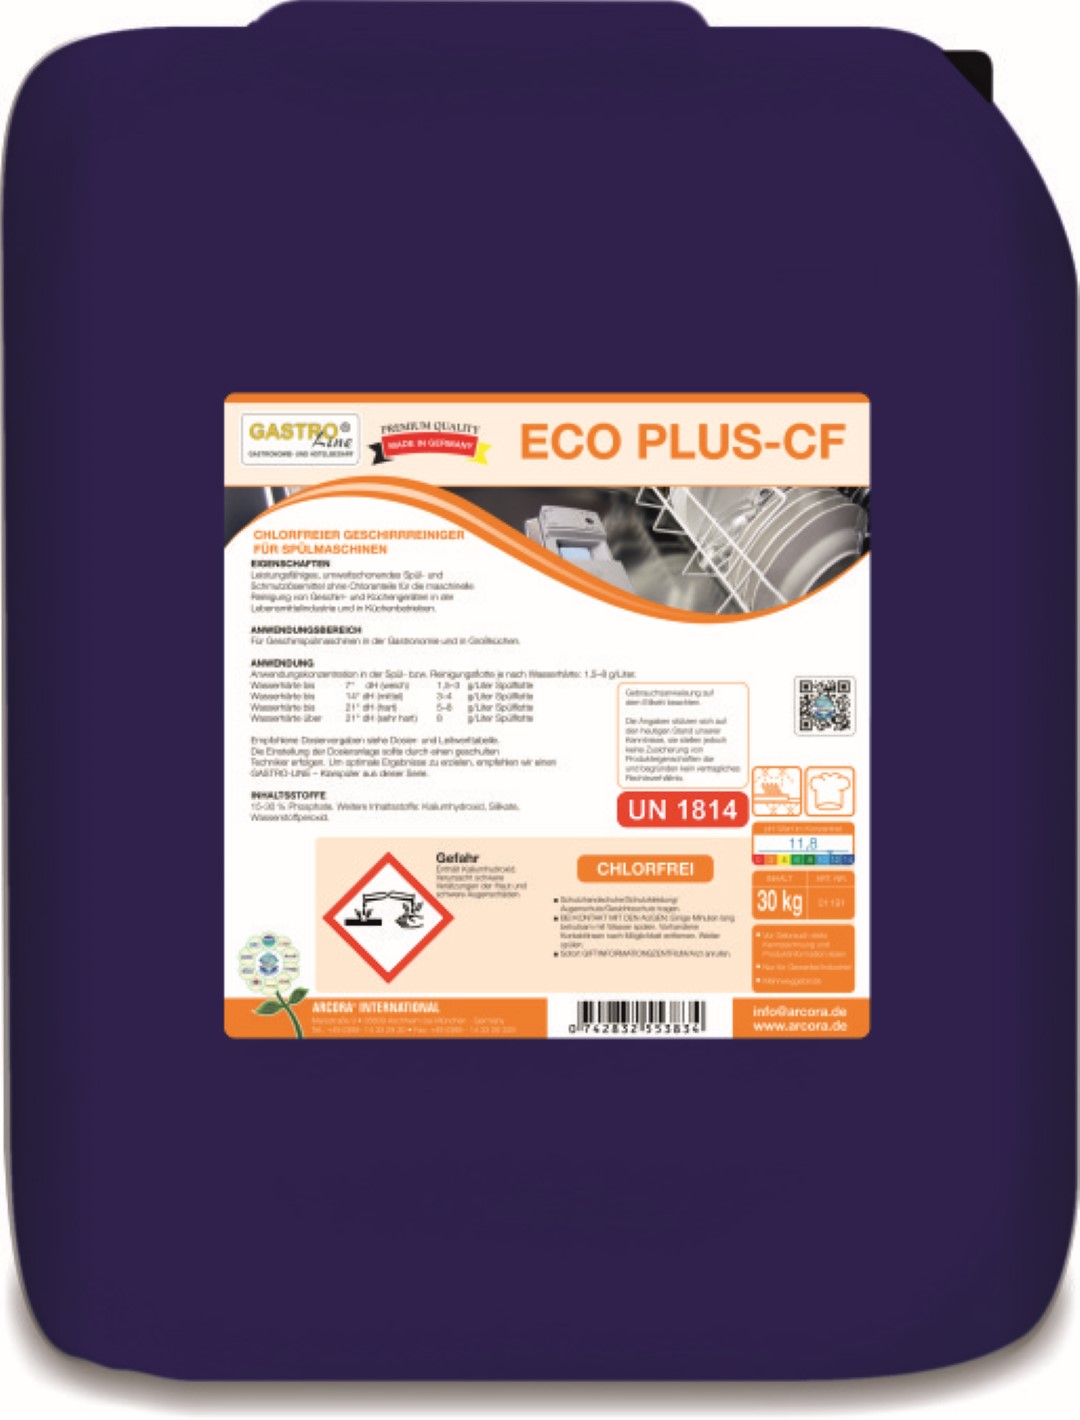  Eco Plus CF | Chlorfreier Geschirrreiniger | Spülmaschine | 30kg